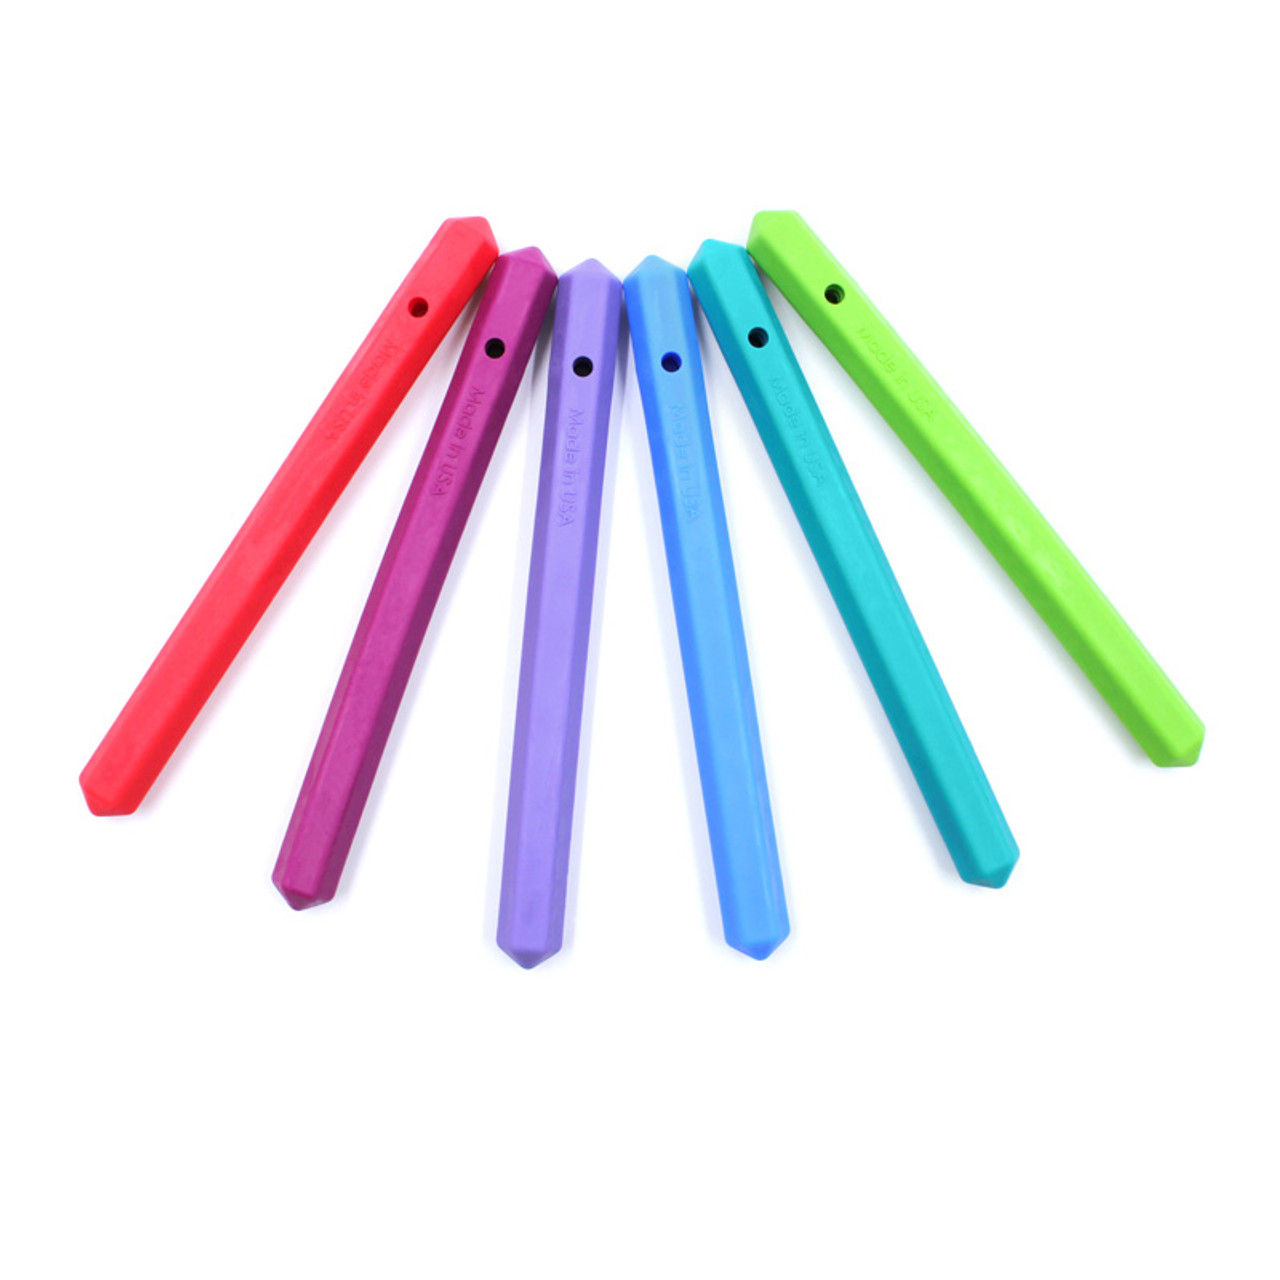 Embouts de Crayon à Mâcher Krypto-Bite® par ARK Therapeutic – Senso-Care